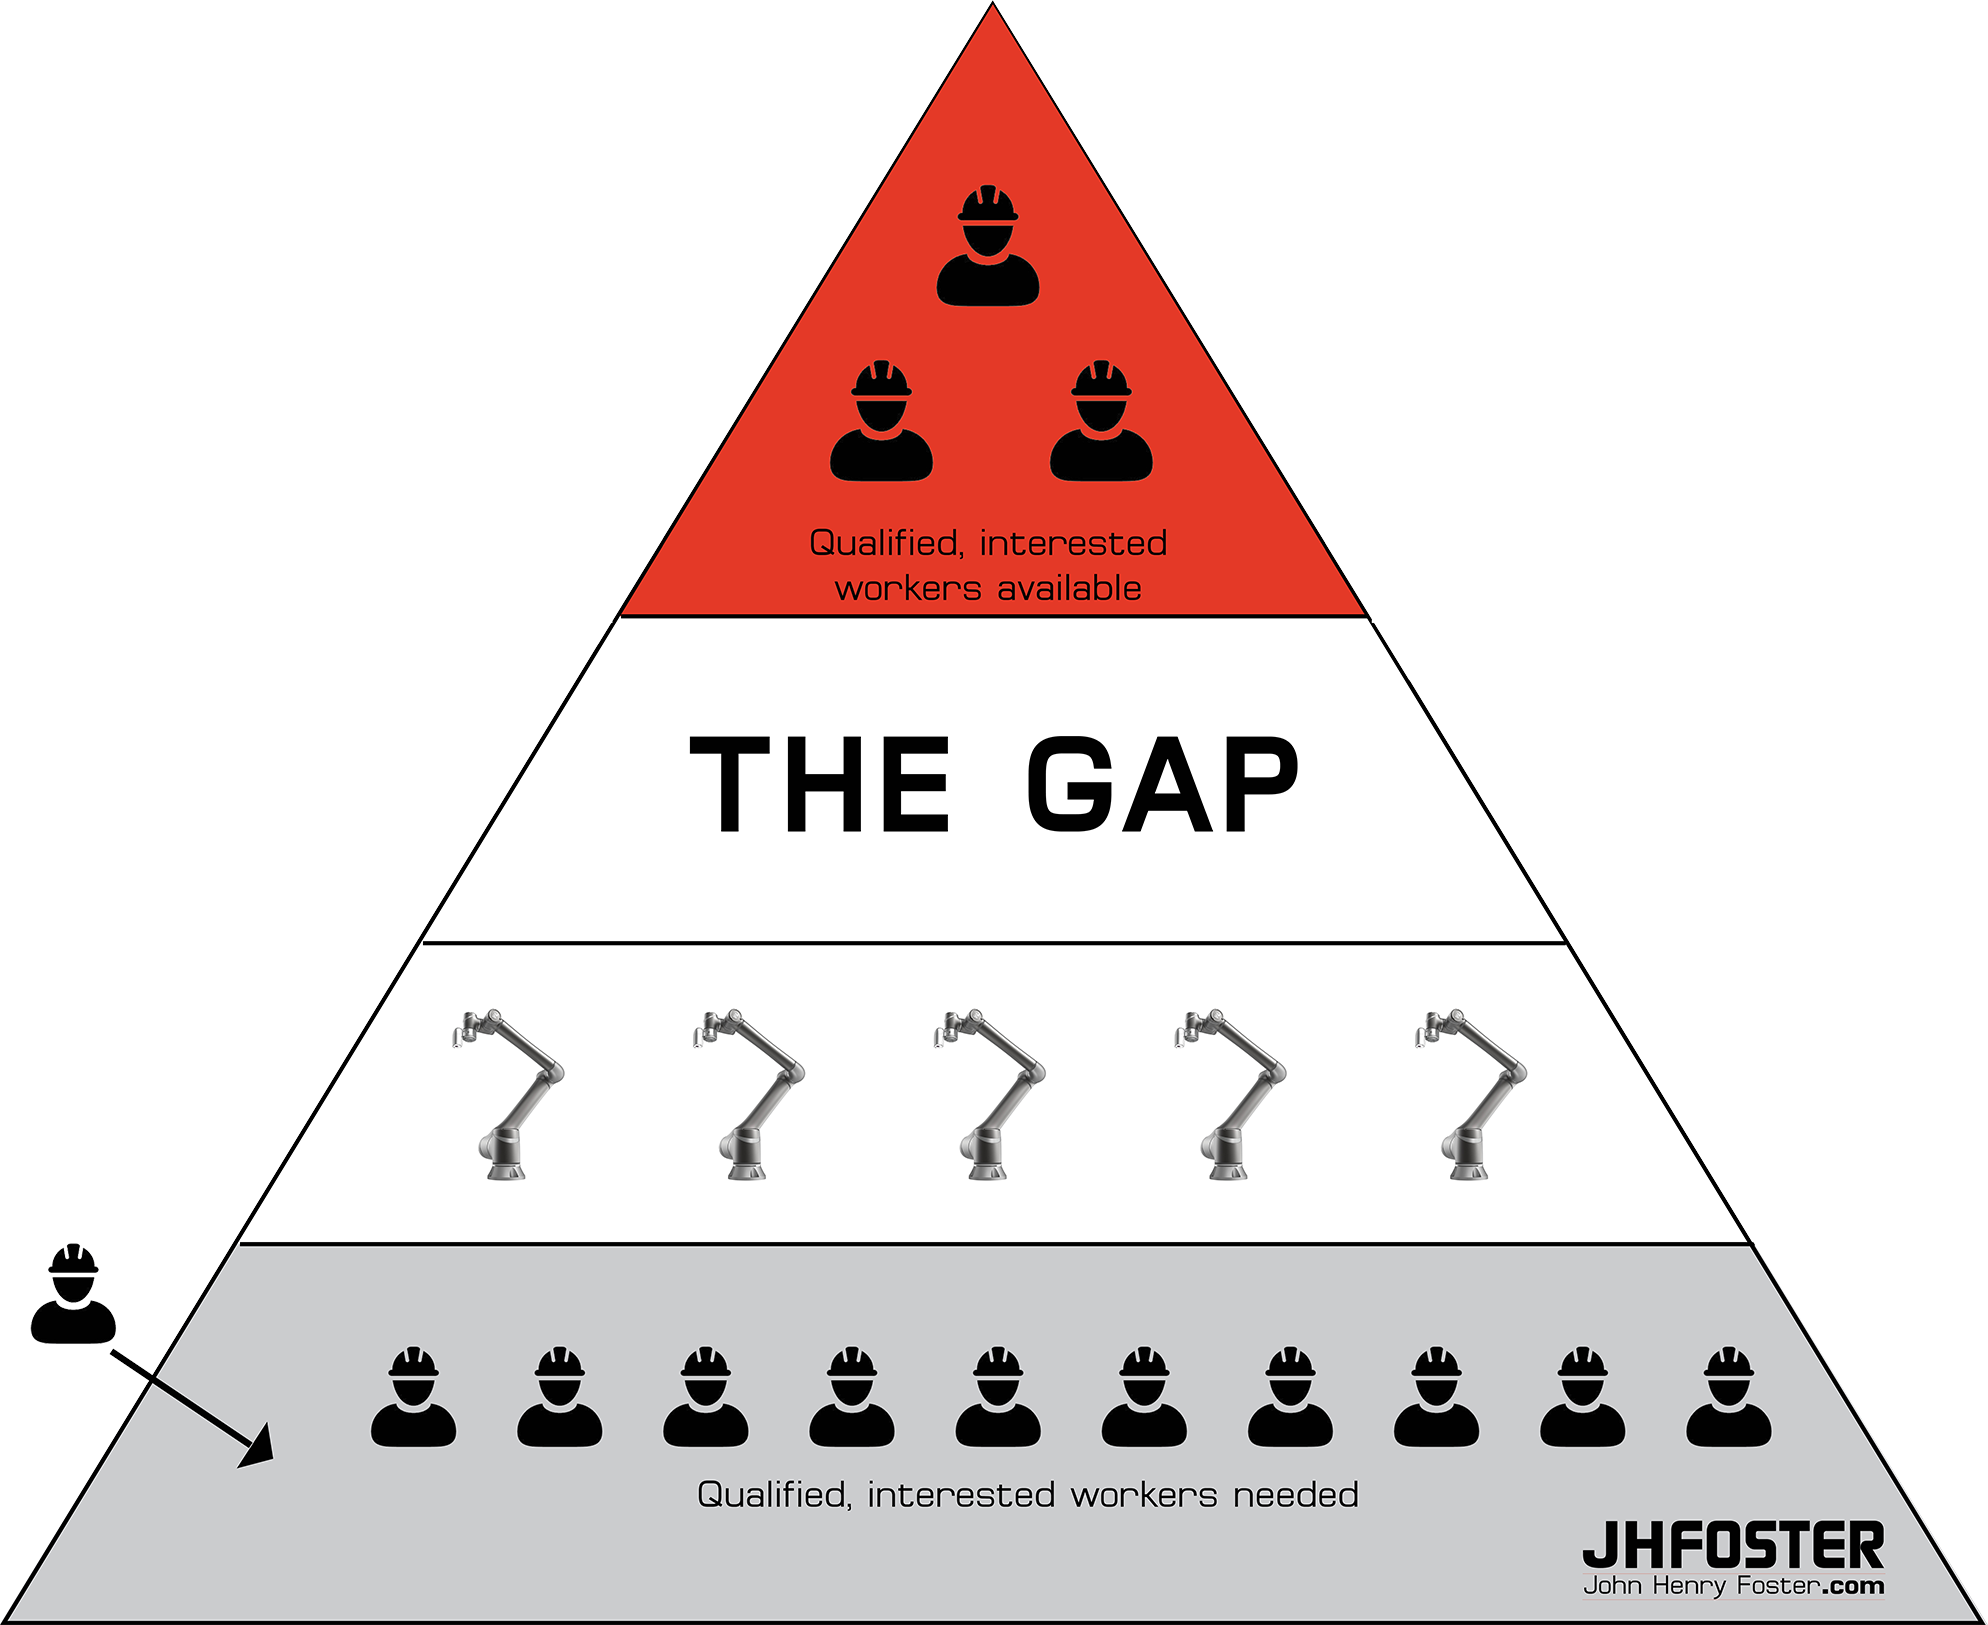 fill-the-gap-pyramid-image-small.png